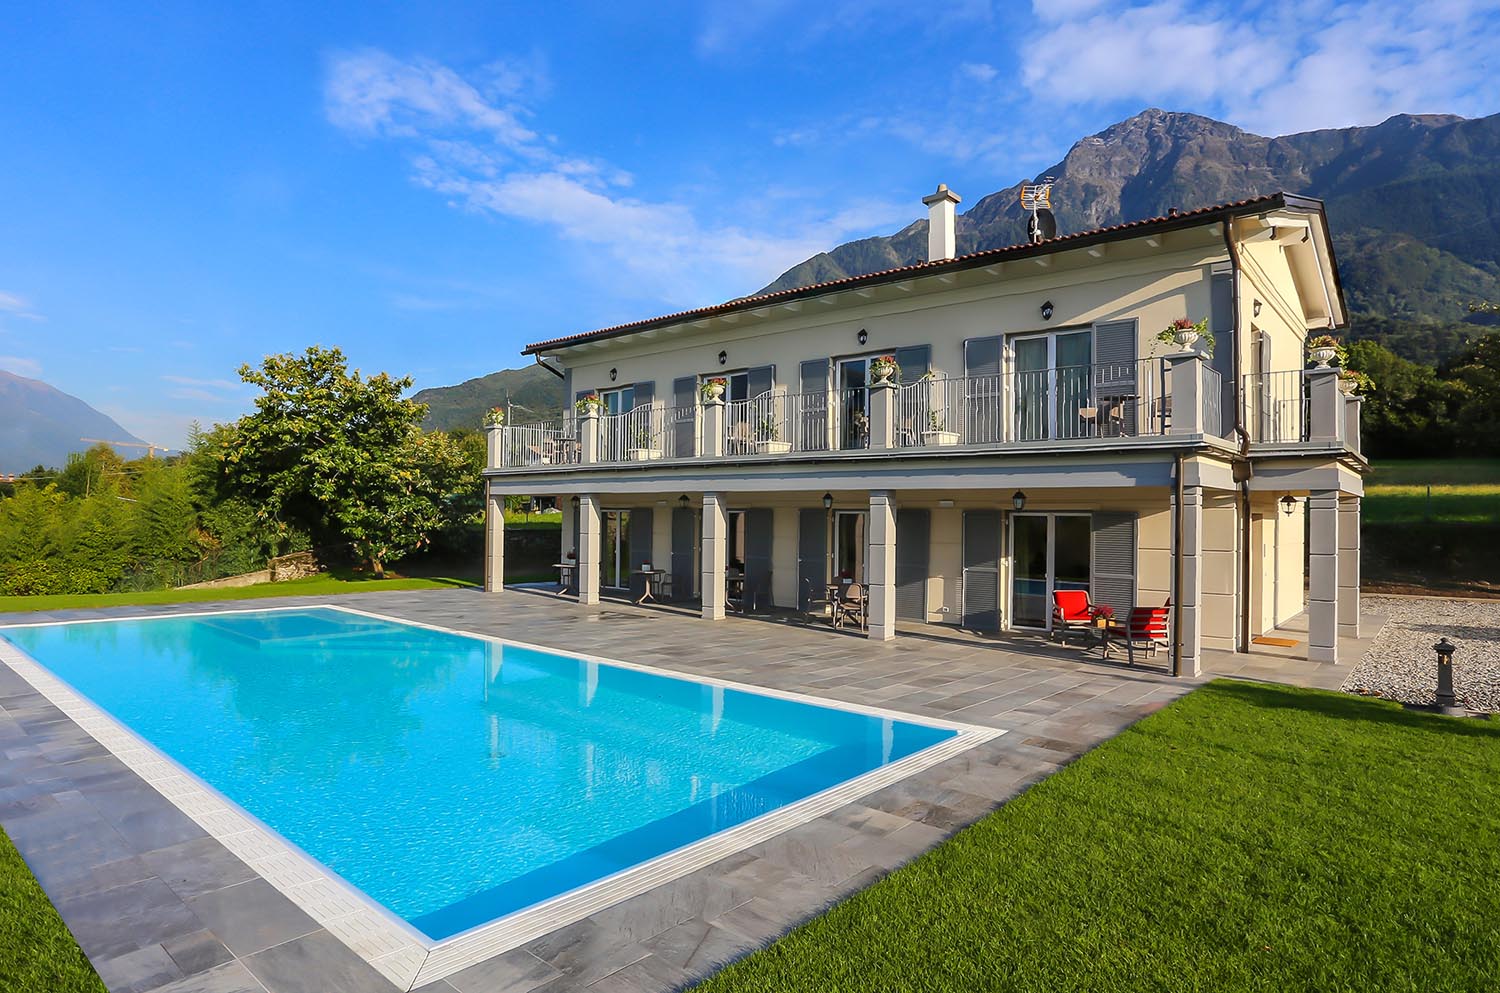 Casa riflessa su piscina a sfioro antisismica con liner bianco e griglia in pietra naturale. Piscina a sfioro con ingresso di design.